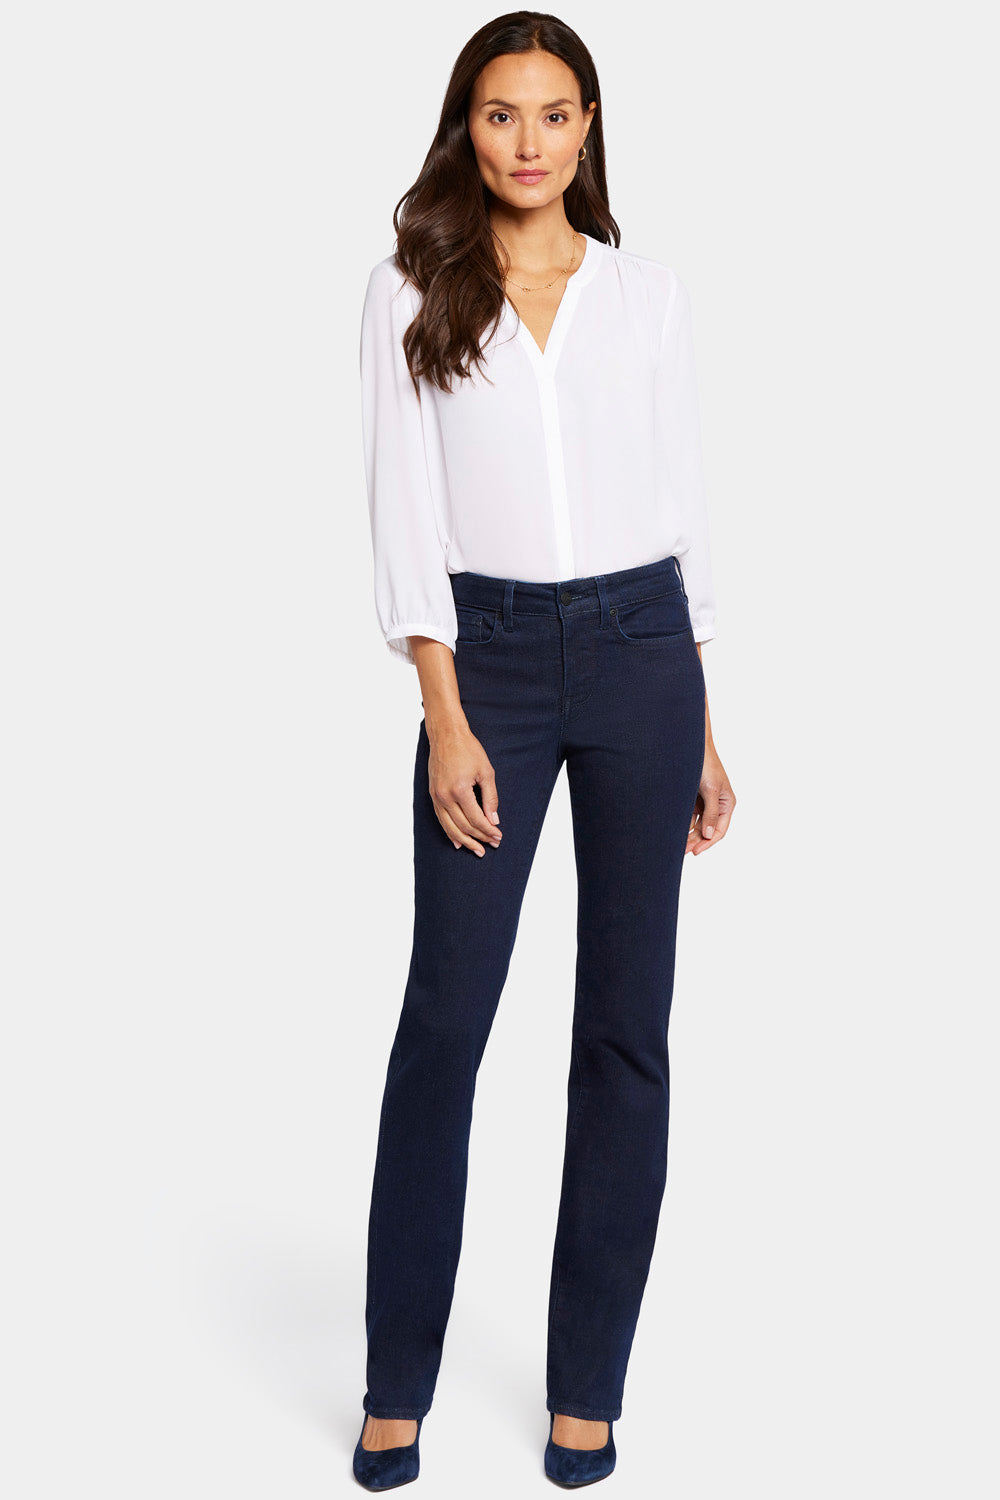 NYDJ, Jeans, New Nydj Marilyn Black Stretch Cuffed Crop Jean Capris Size  2 Bin 3f